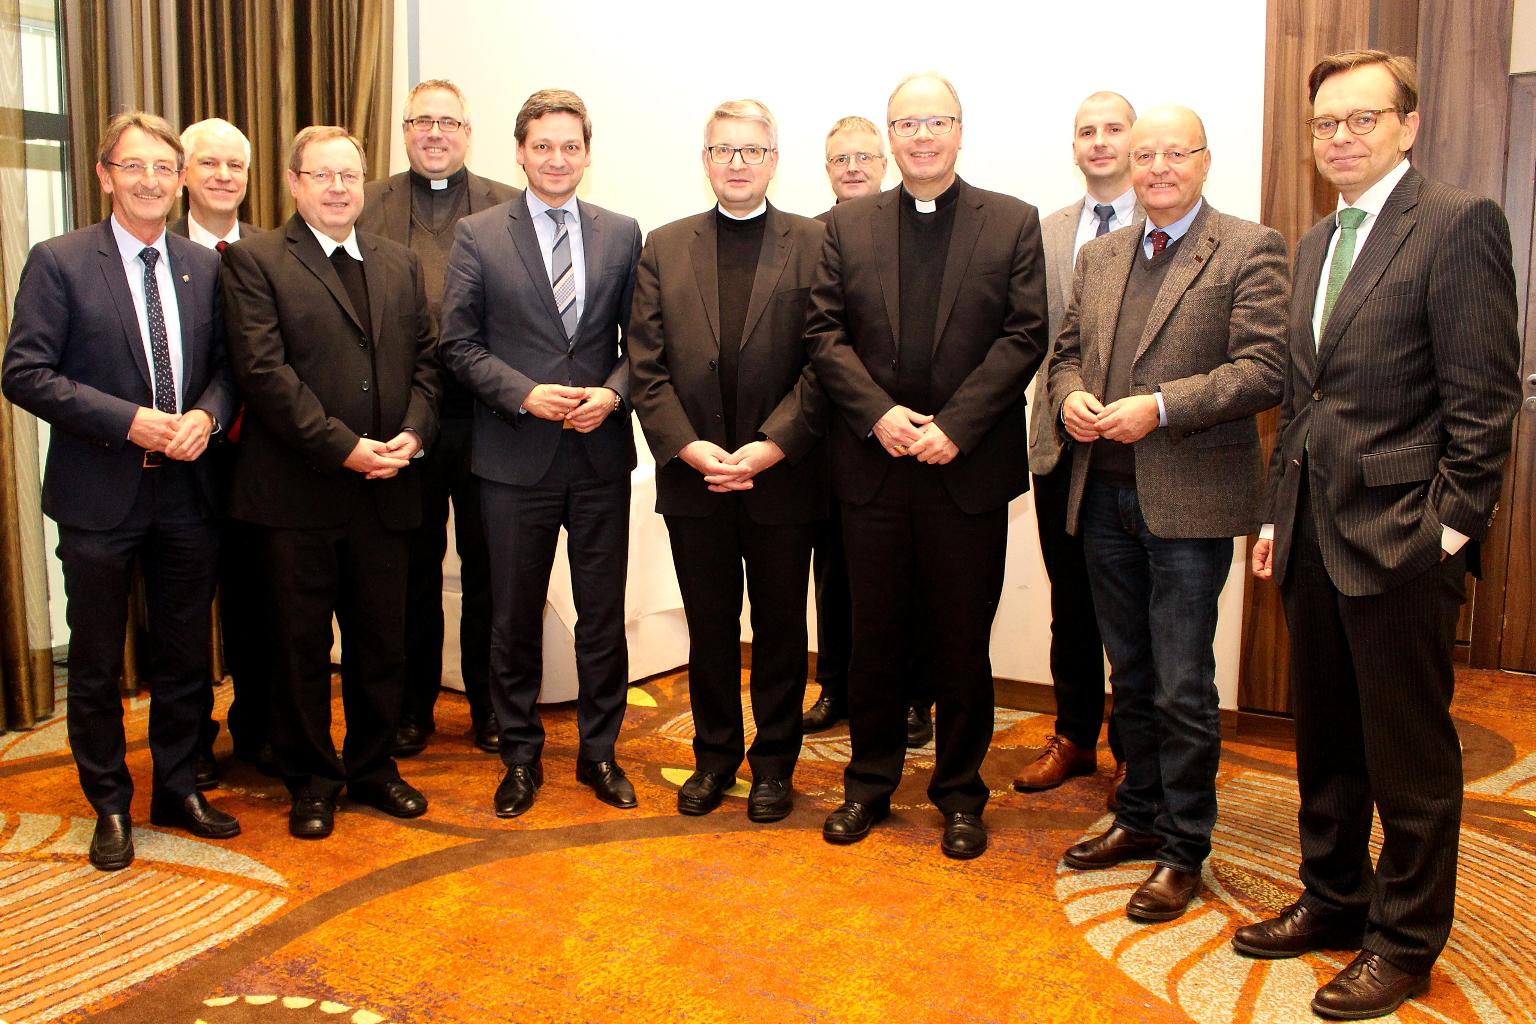 Mainz, 23. Januar 2019: Vertreter der CDU-Landtagsfraktion in Rheinland-Pfalz haben sich zum Spitzengespräch mit Vertretern der Katholischen Kirche zusammen gekommen. (c) Bistum Mainz / Blum